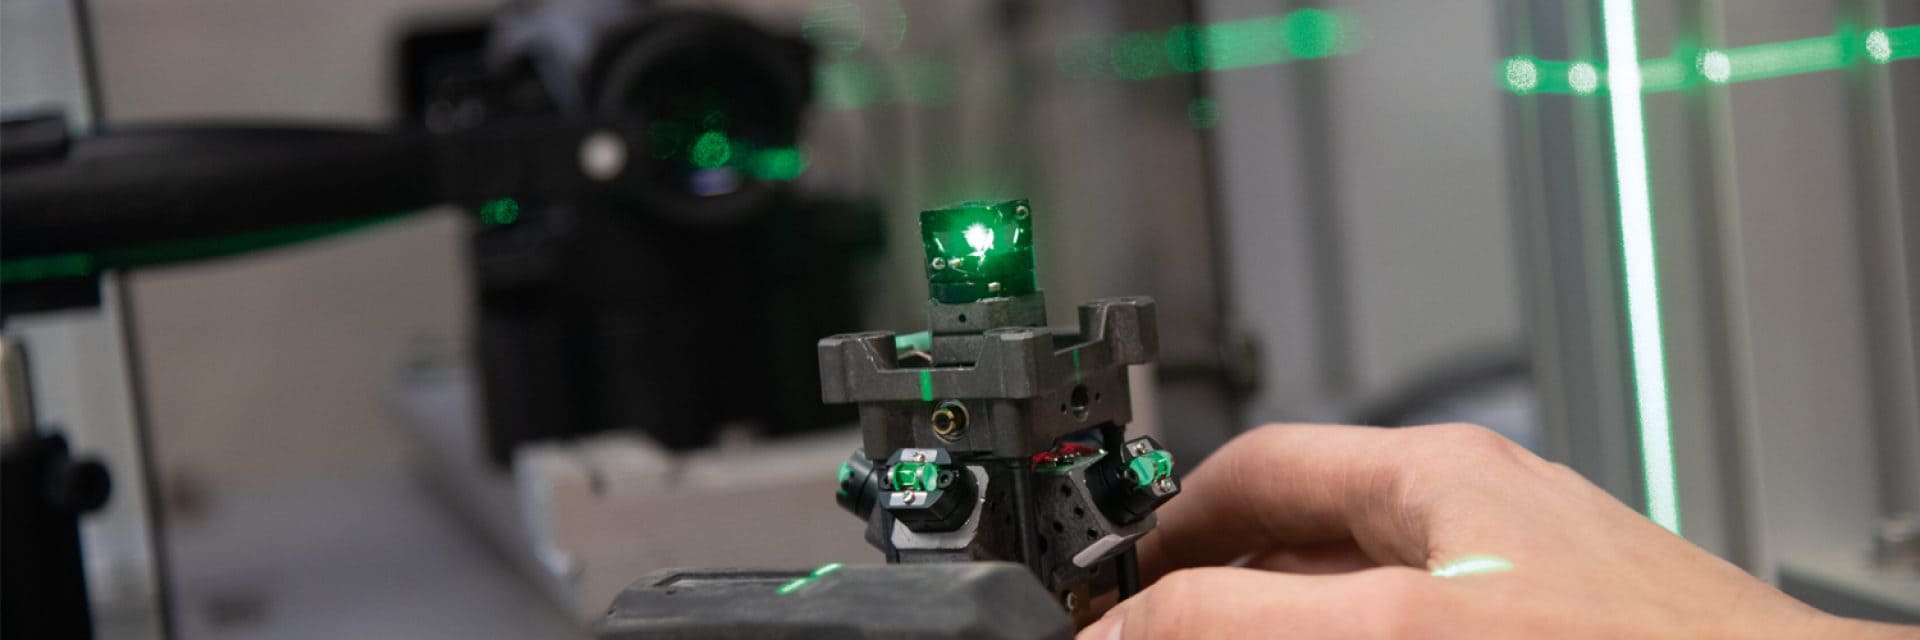 Servizio di calibrazione Hilti raggio laser verde